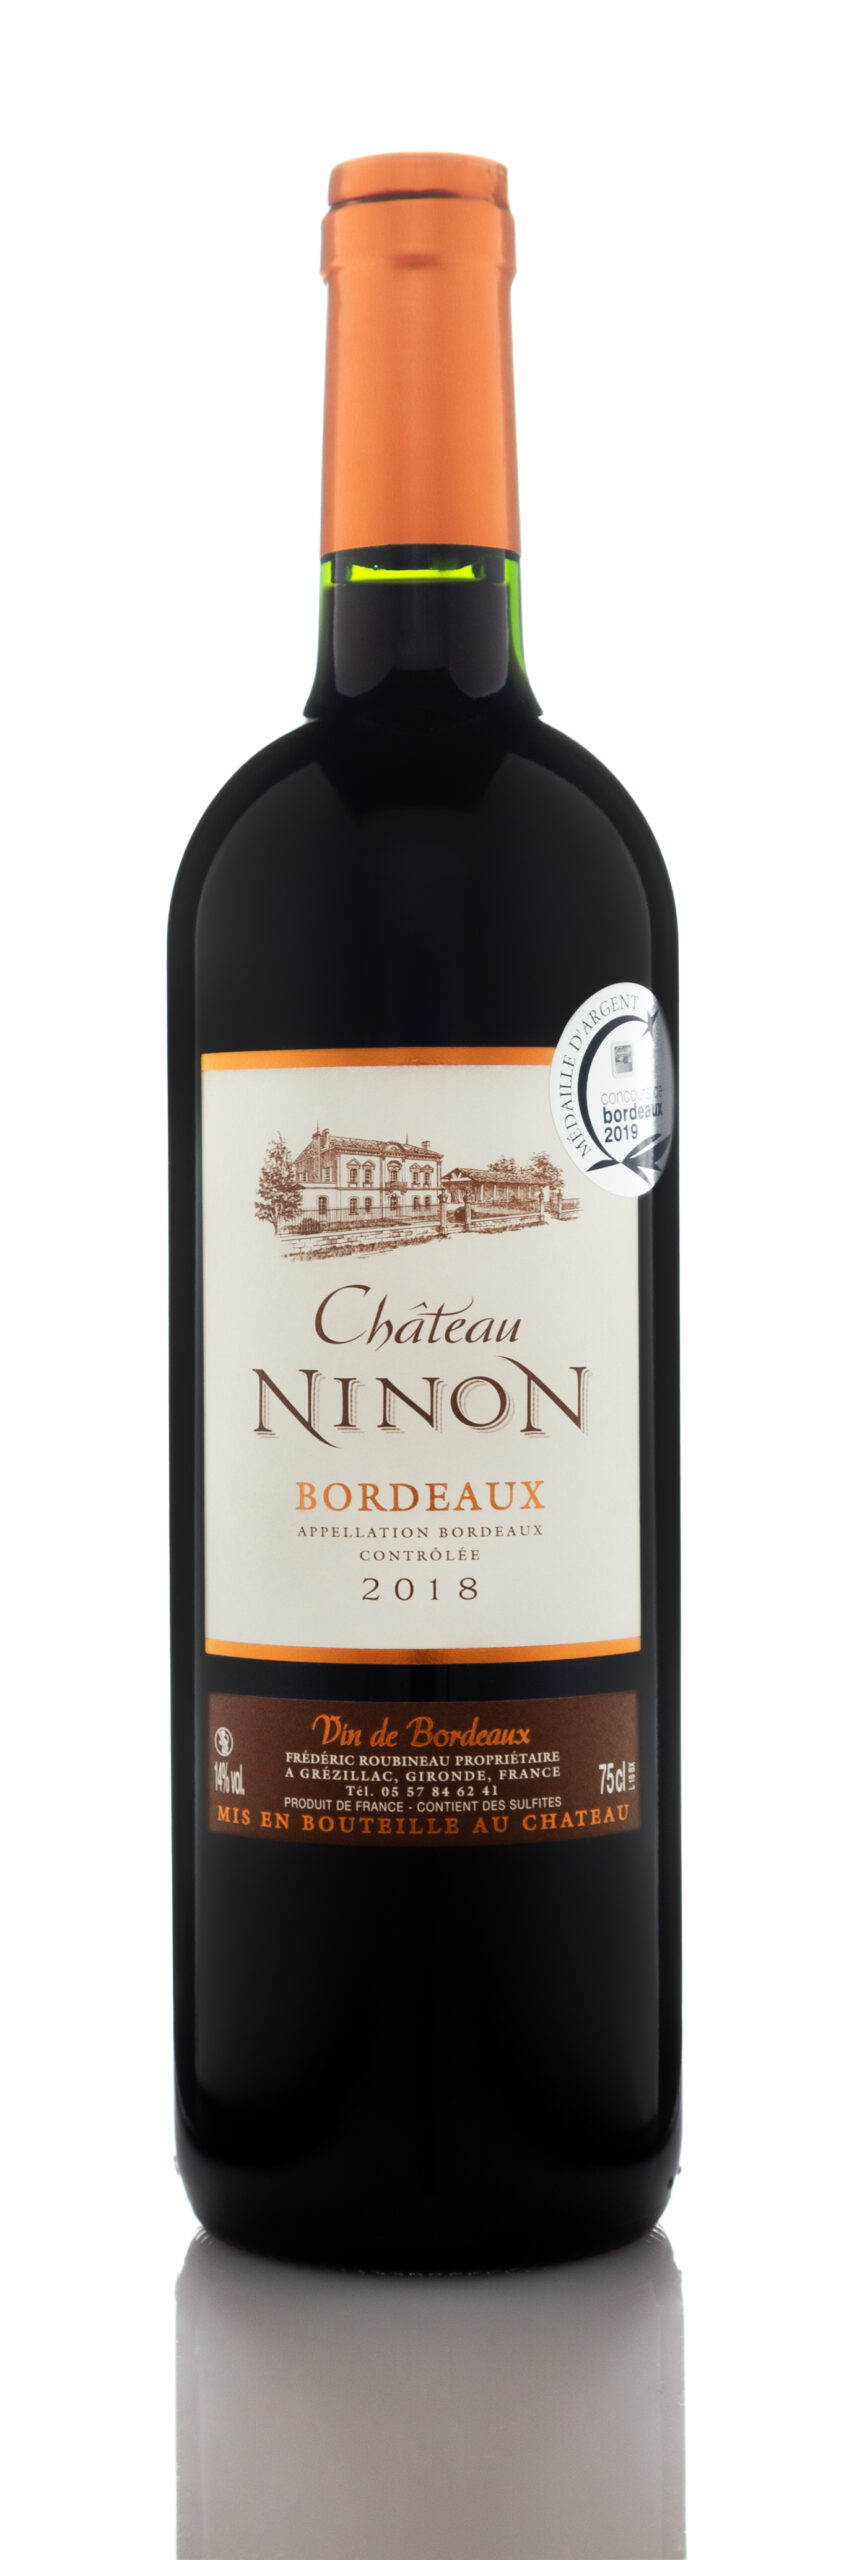 2018 Chateau Ninon, Bordeaux